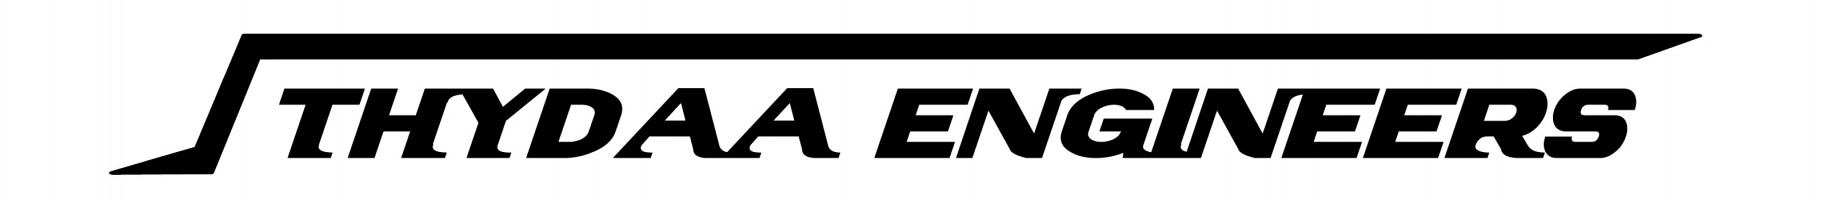 THYDAA ENGINEERS SDN BHD logo